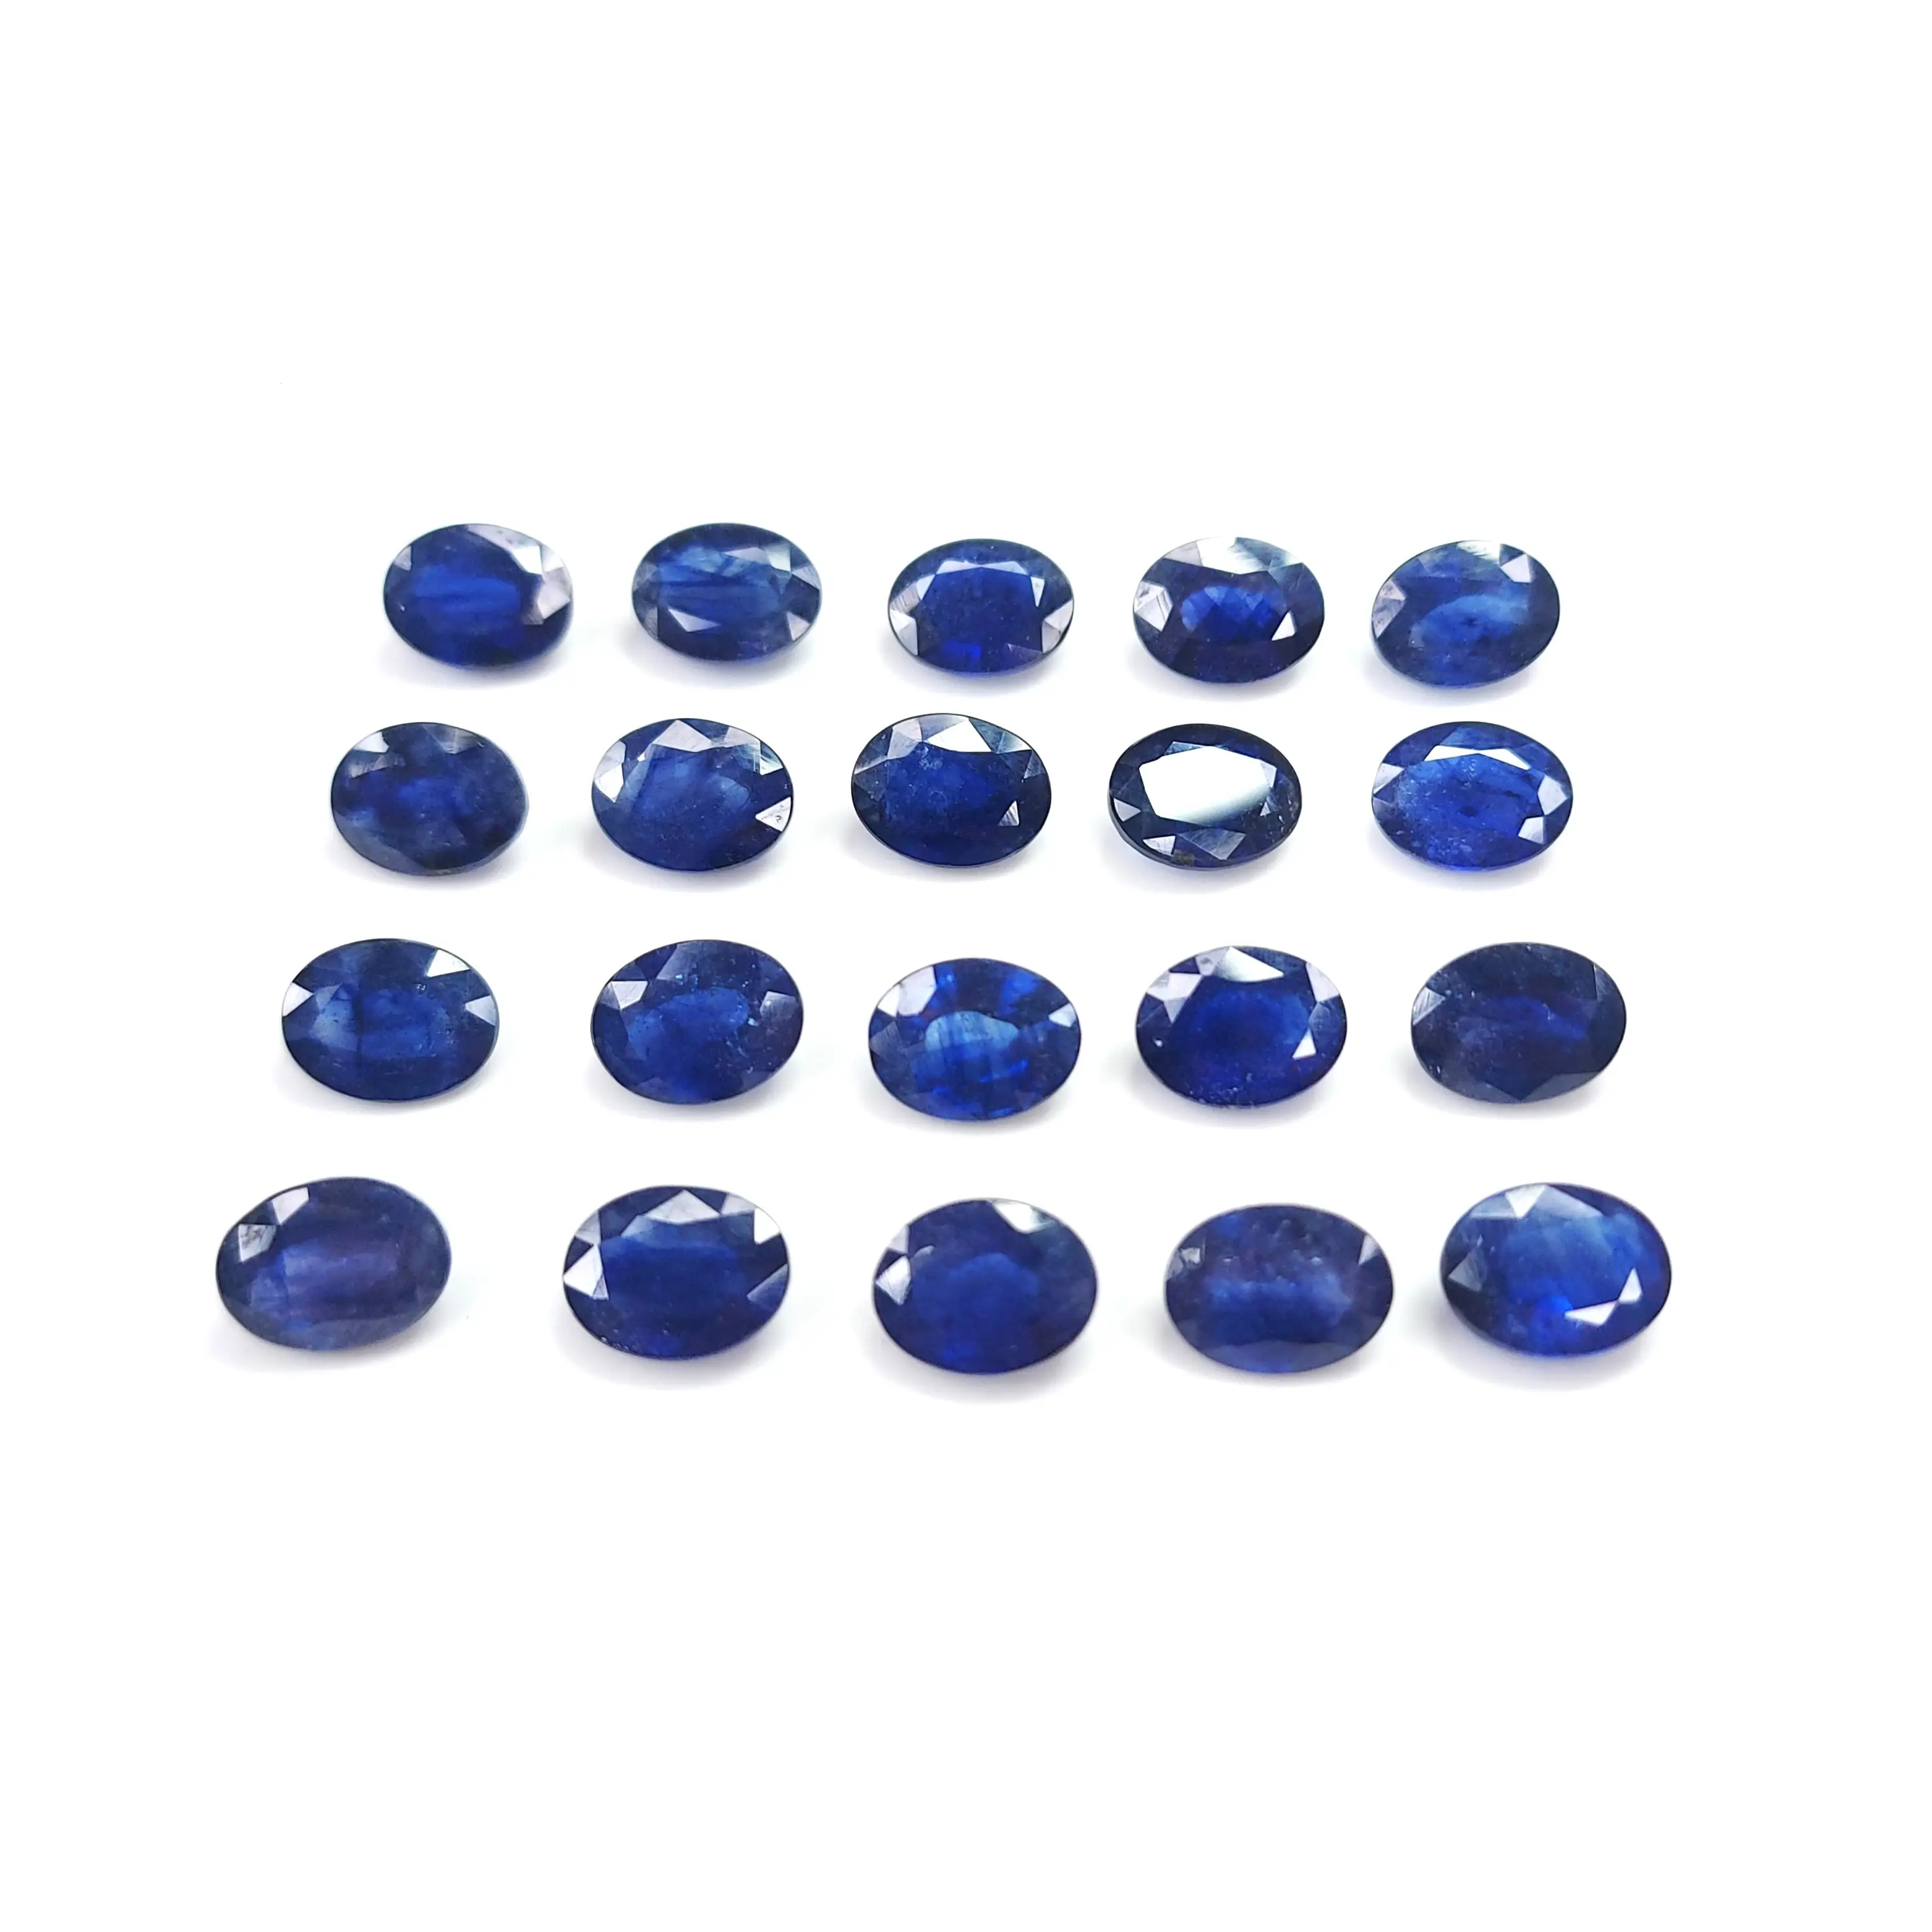 Forma ovale 10x8mm naturale zaffiro blu genuina preziosa pietra preziosa per la creazione di gioielli disponibile in esportazione